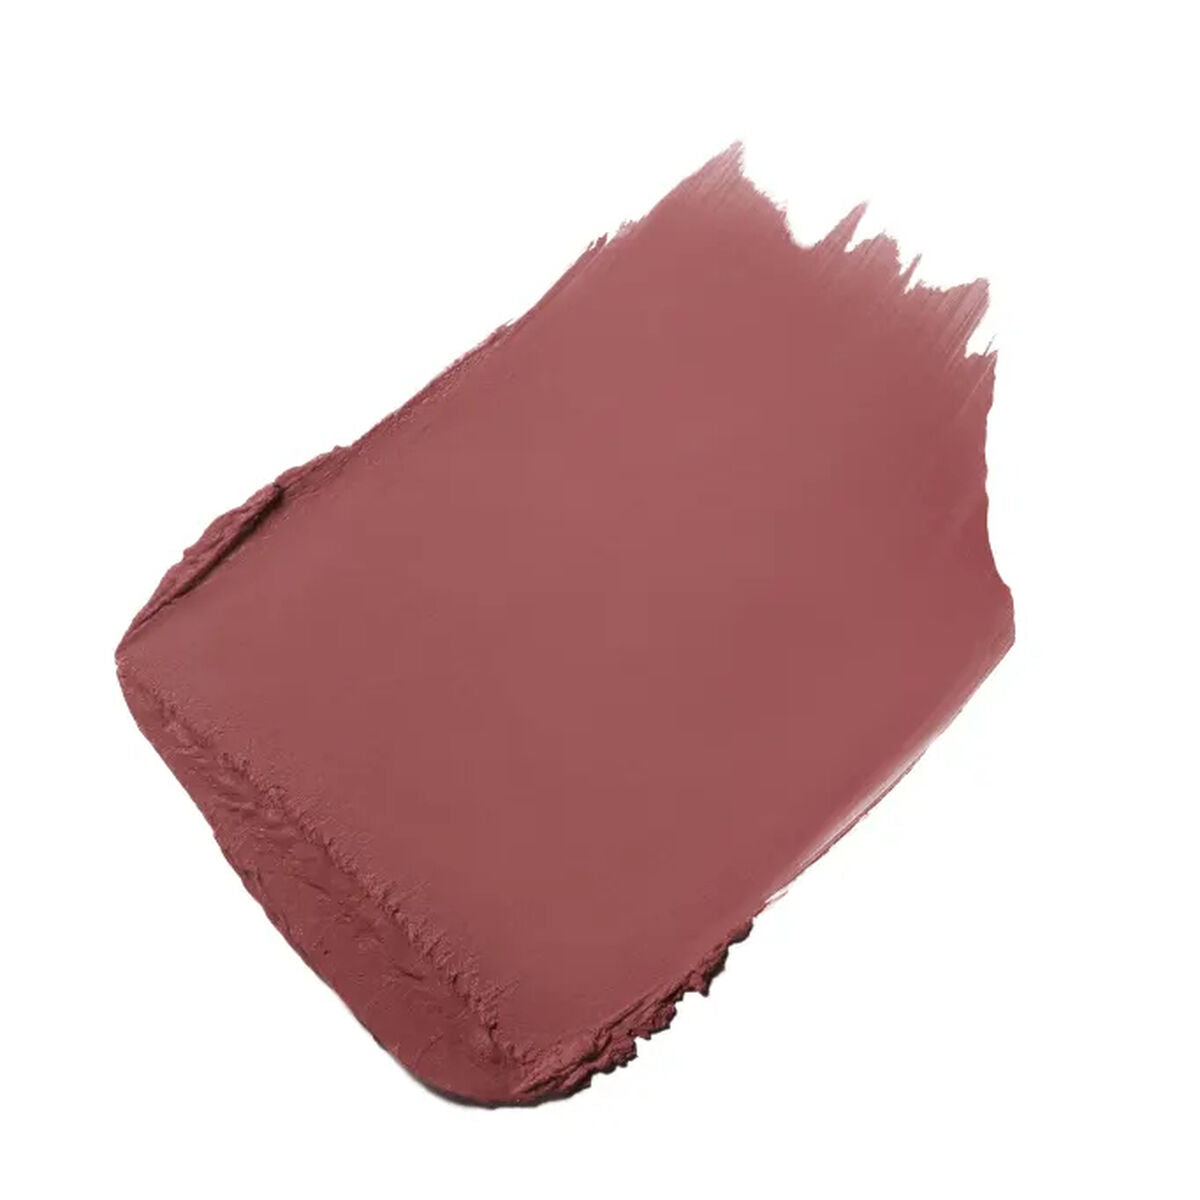 Kaufe Lippenstift Chanel Rouge Allure Velvet Nº 06:00 3,5 g bei AWK Flagship um € 72.00